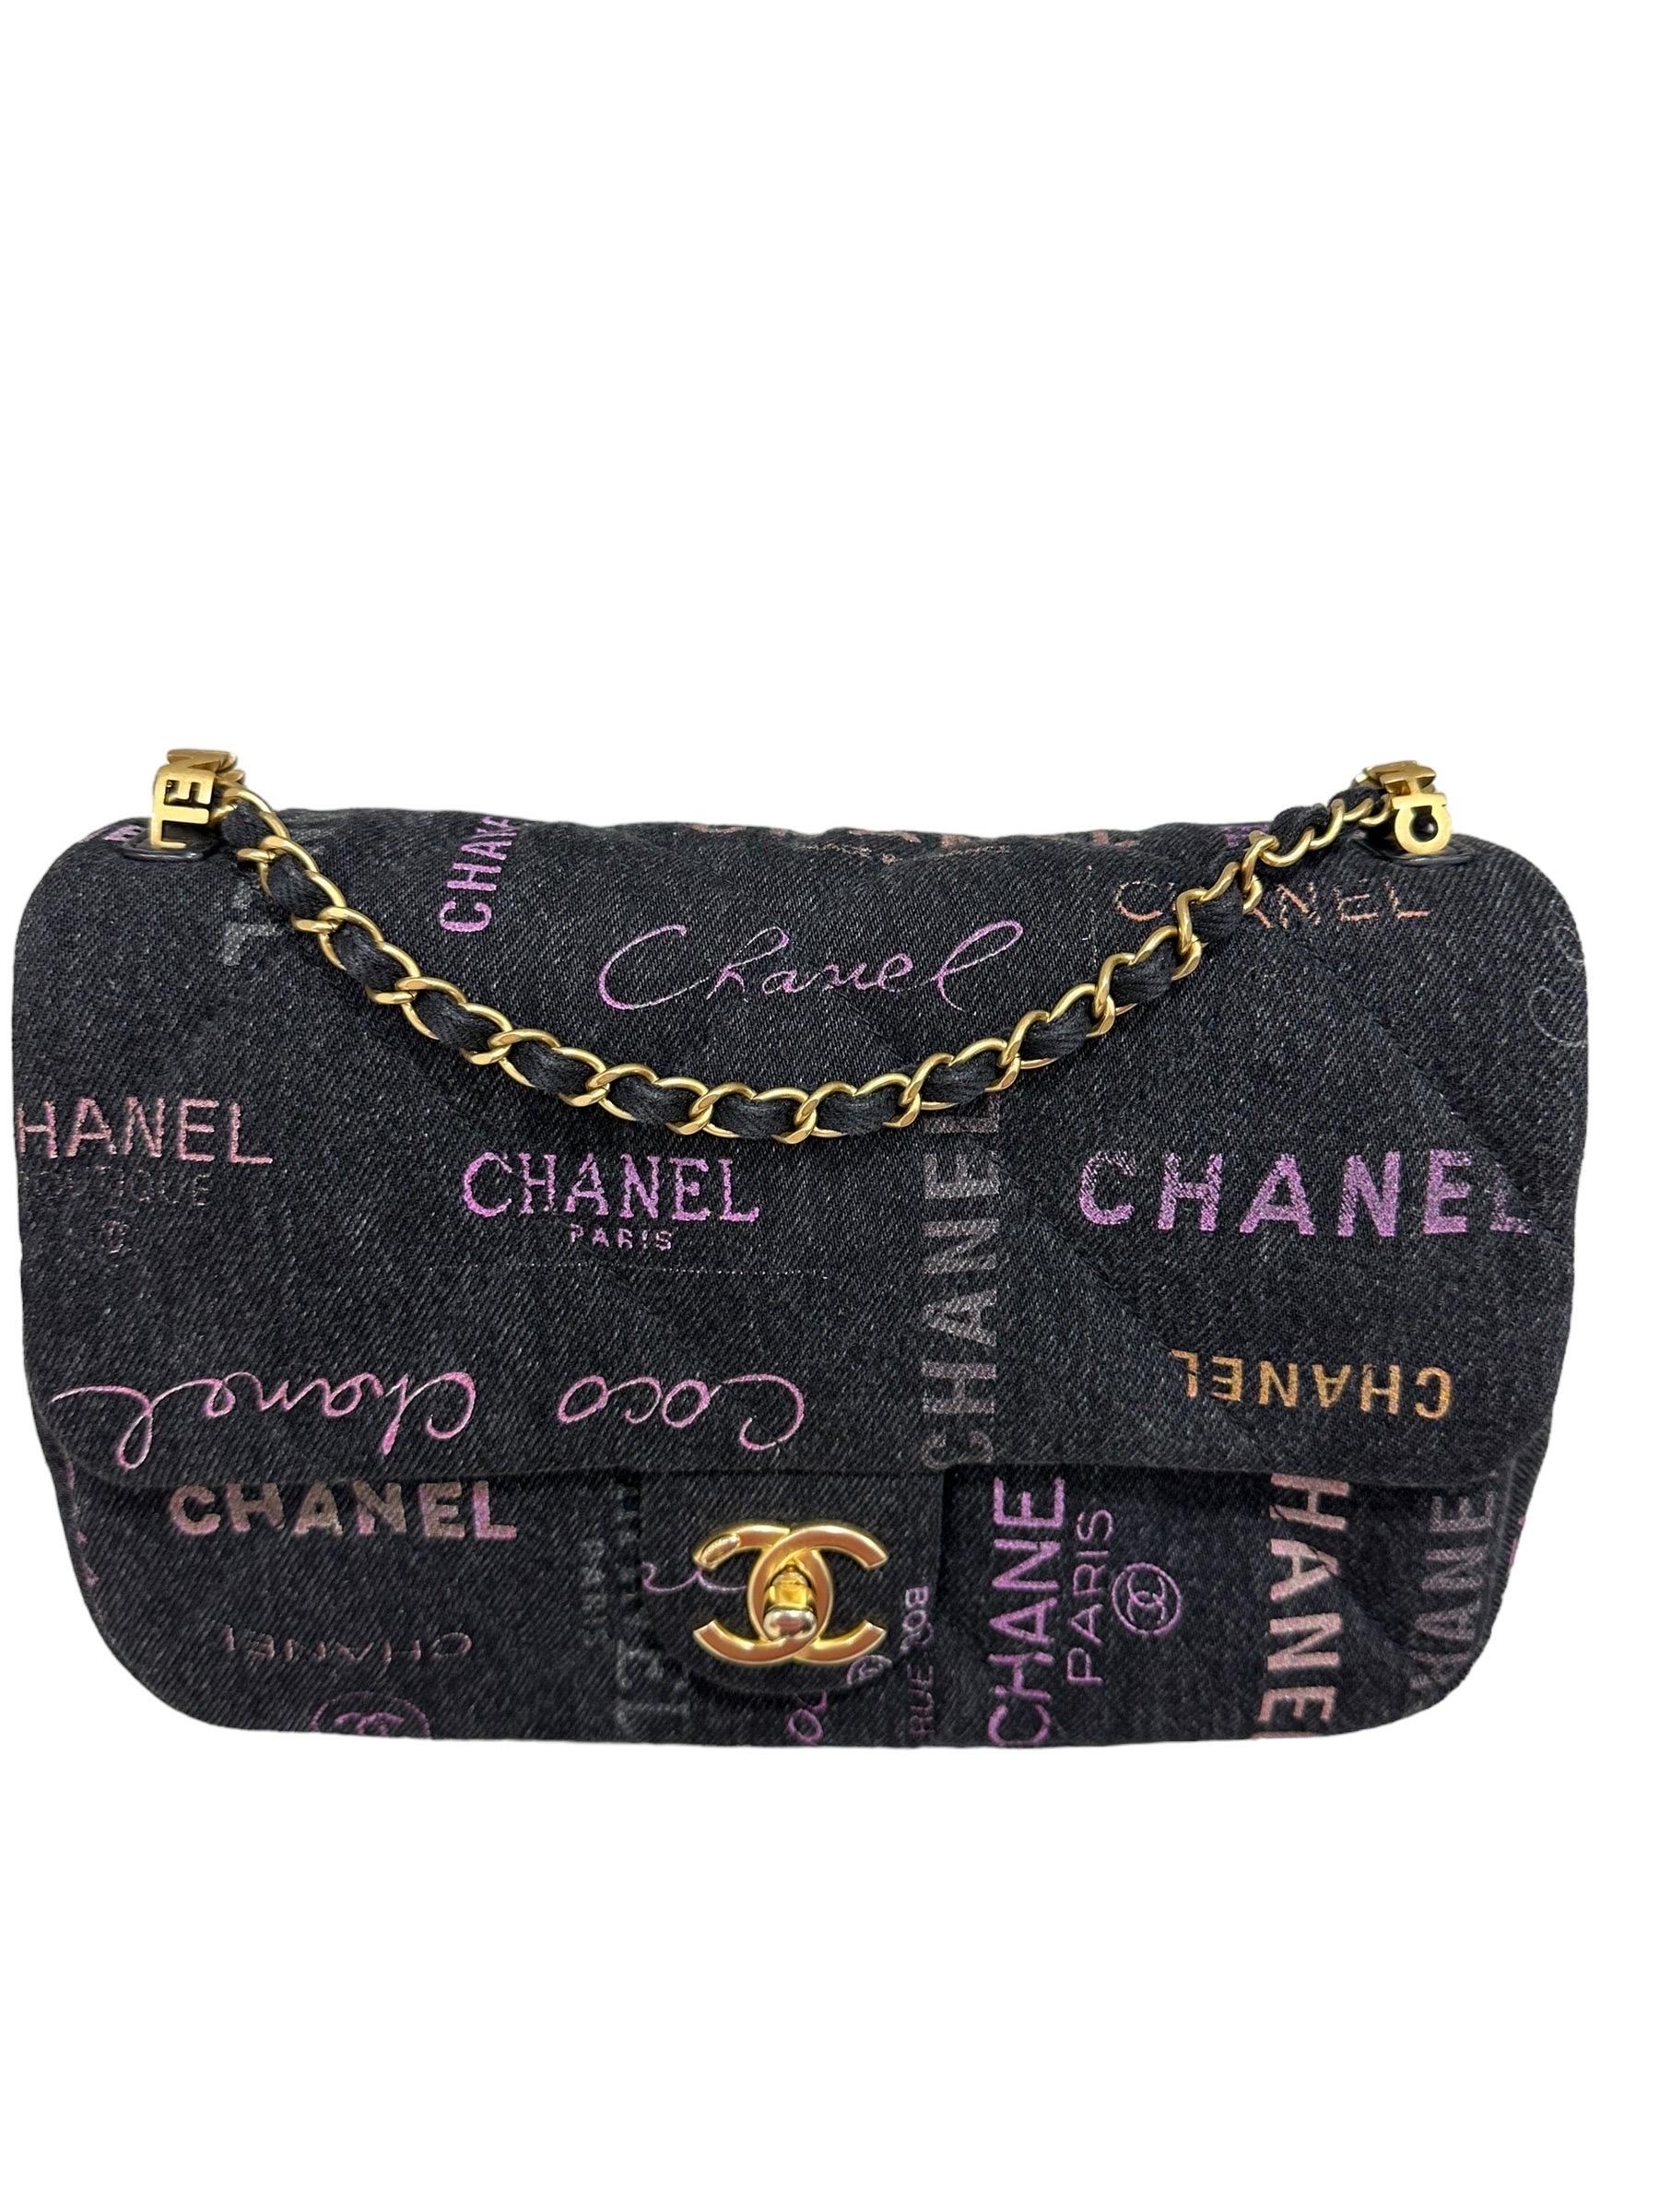 Borsa firmata Chanel, modello 2.55 Graffiti, realizzat in tessuto denim nero con hardware dorati. Dotata di una patta con chiusura ad  girello logo CC, internamente rivestita in tela tono su tono, ababstanza capiente. Munita di una tracolla